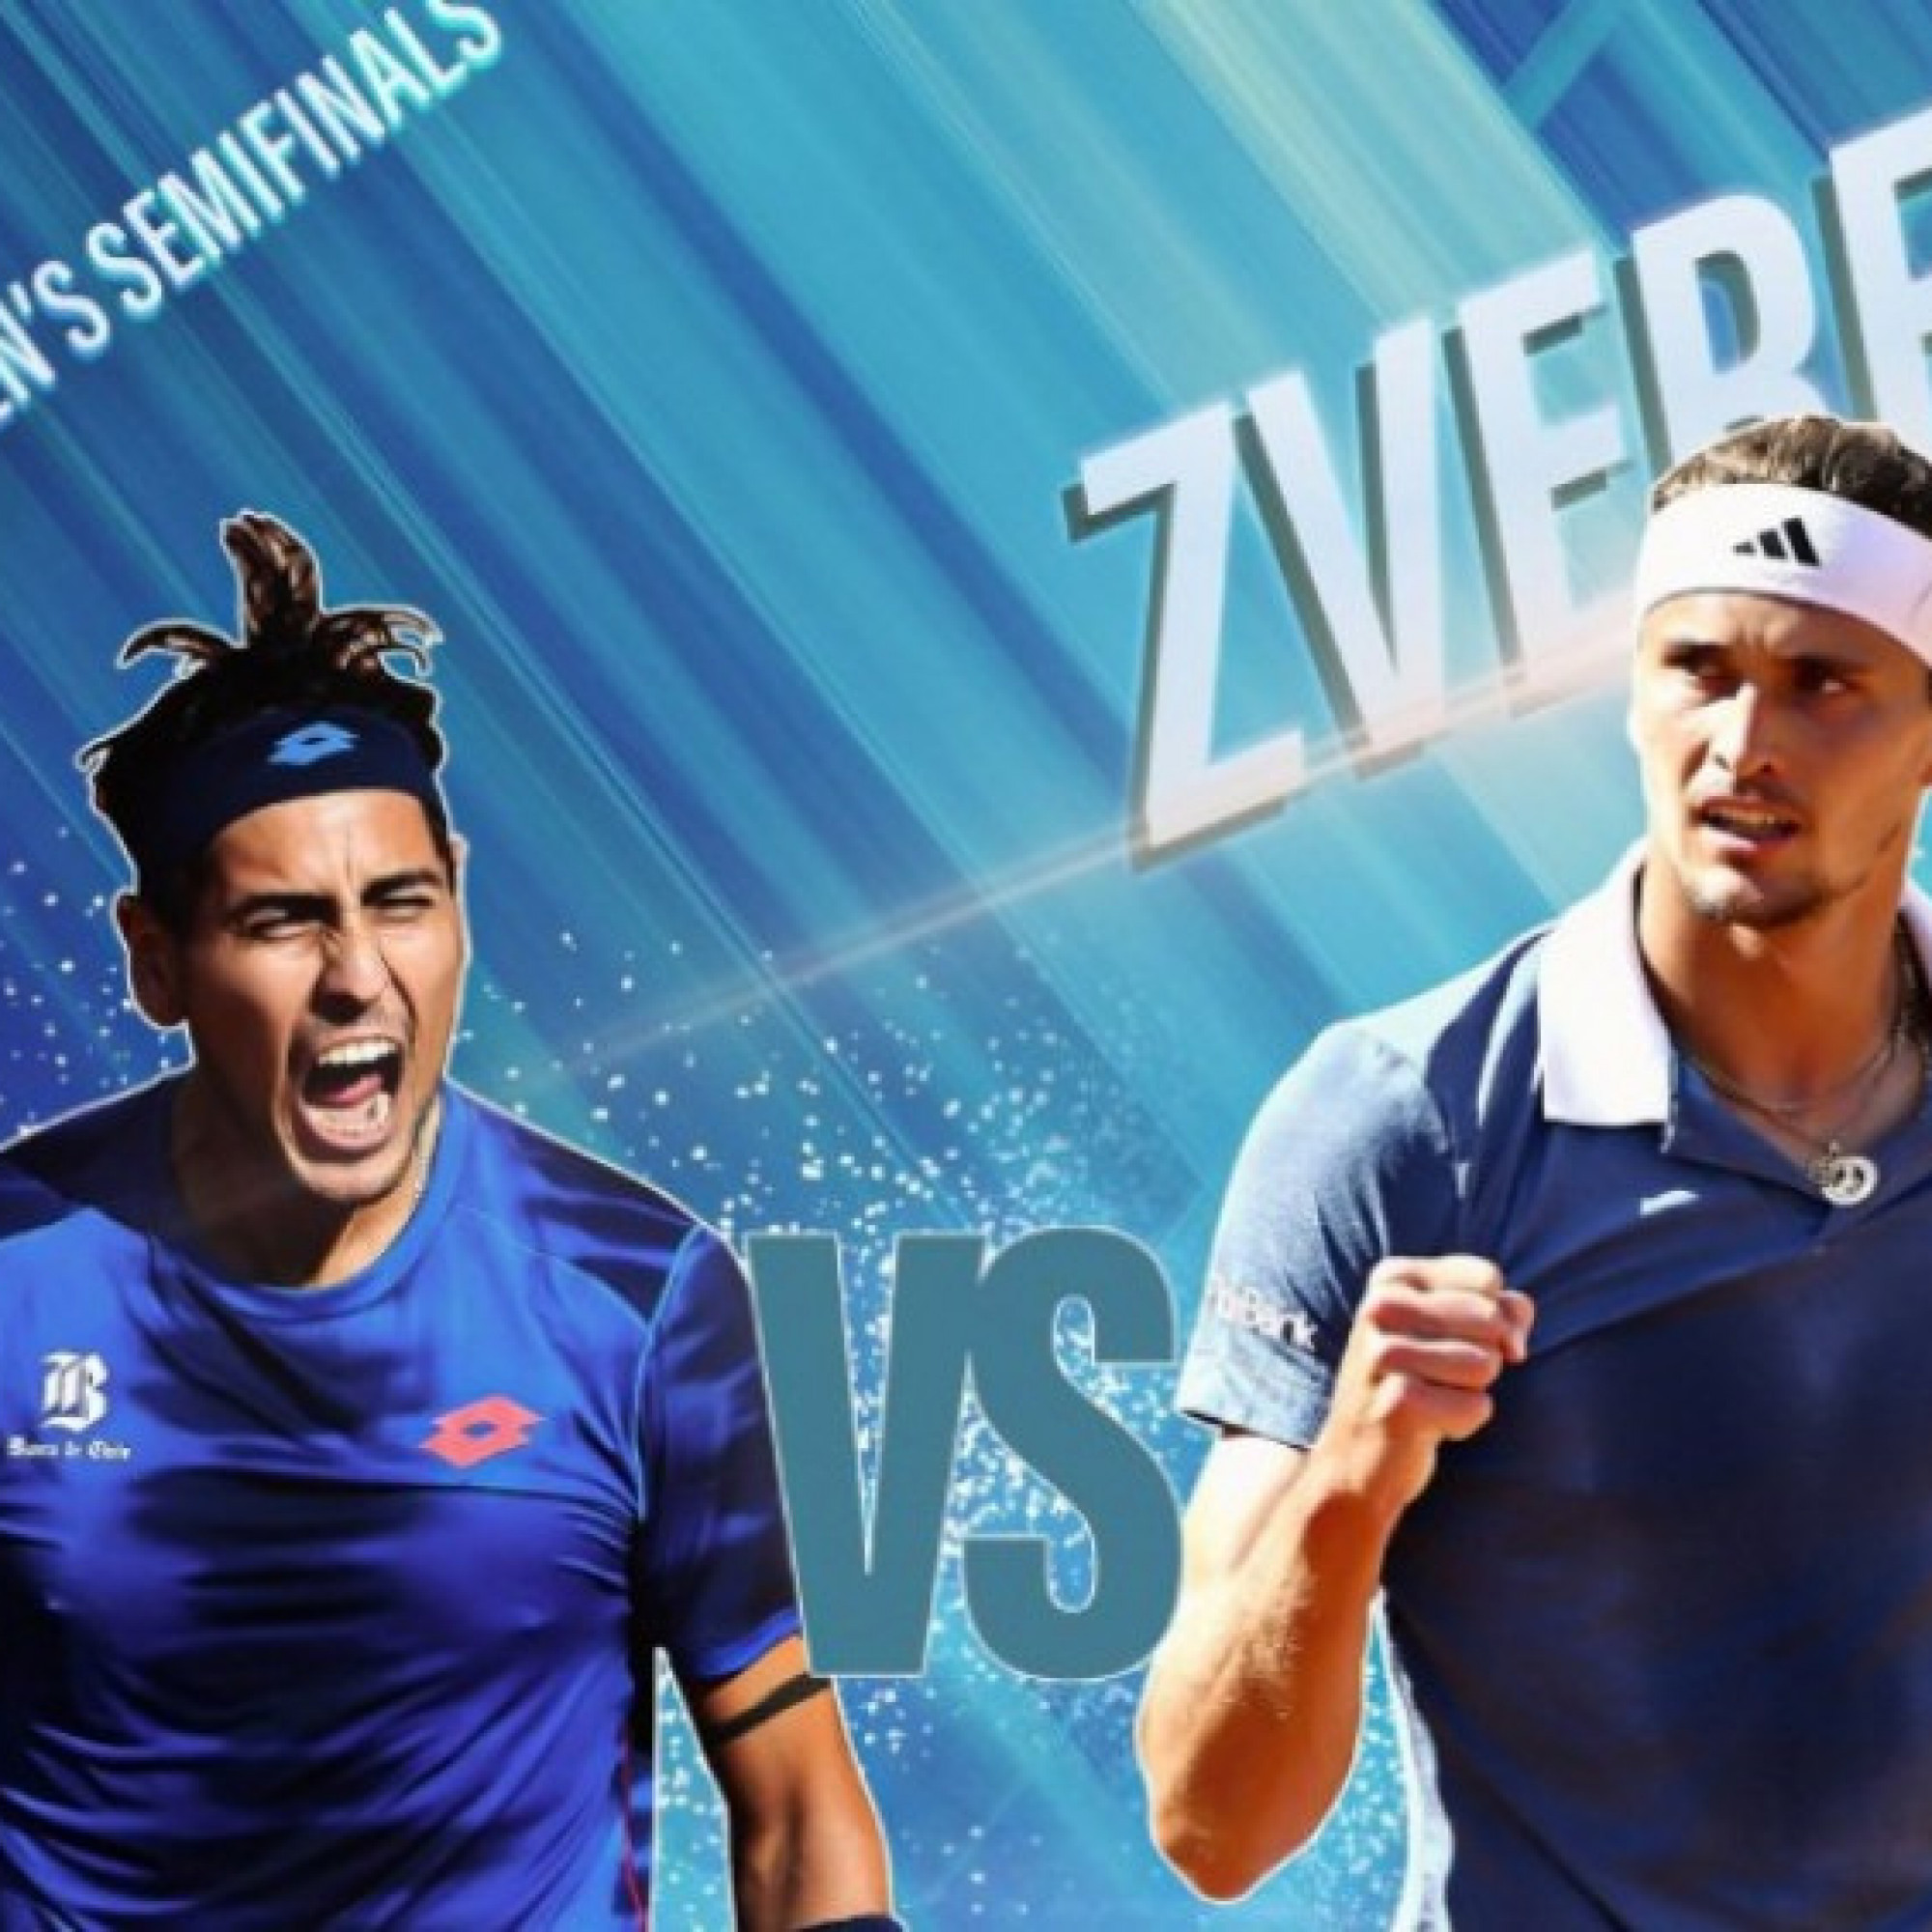  - Trực tiếp tennis Tabilo - Zverev: Đại chiến nảy lửa vì vé chung kết (Rome Open)